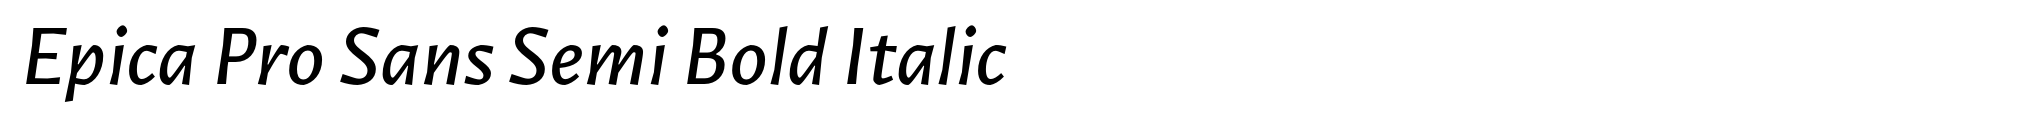 Epica Pro Sans Semi Bold Italic image